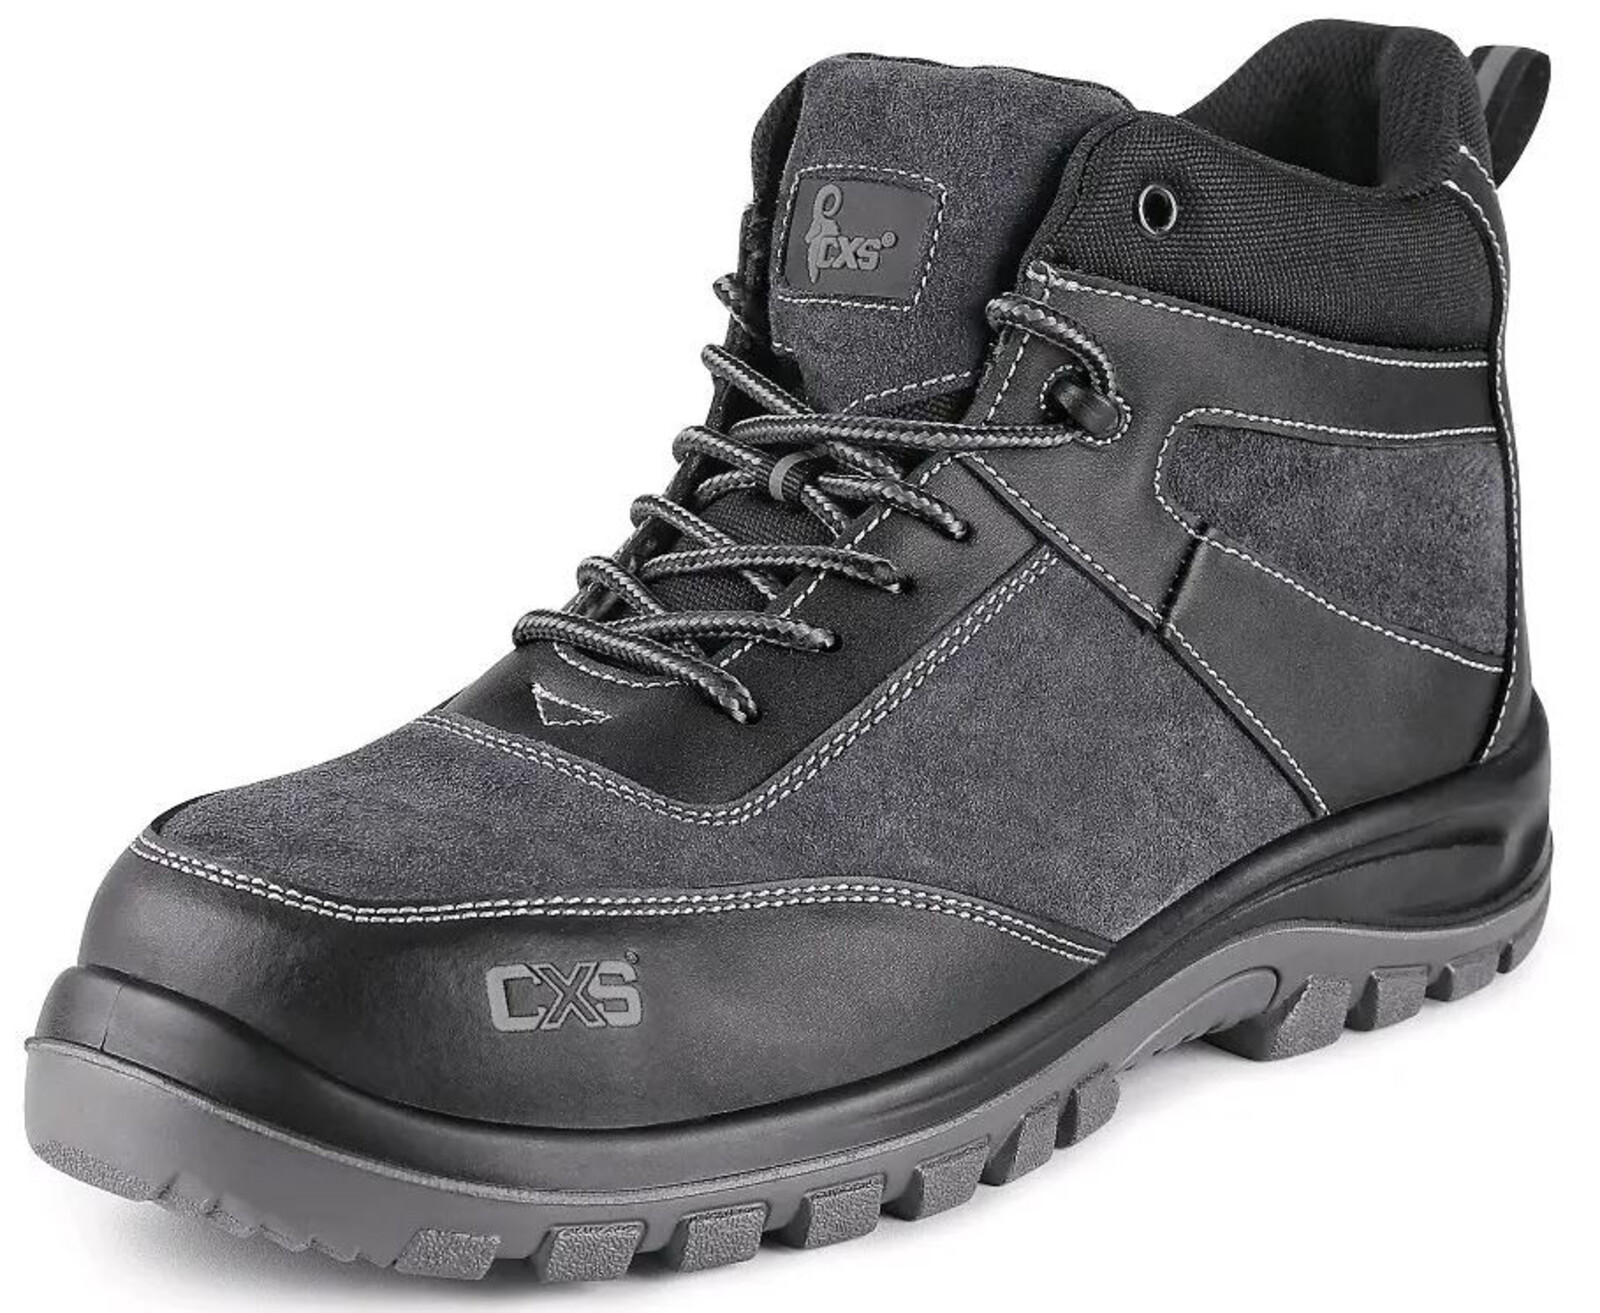 Pracovná členková obuv CXS Profit Win O1 FO SRC - veľkosť: 47, farba: čierna/sivá